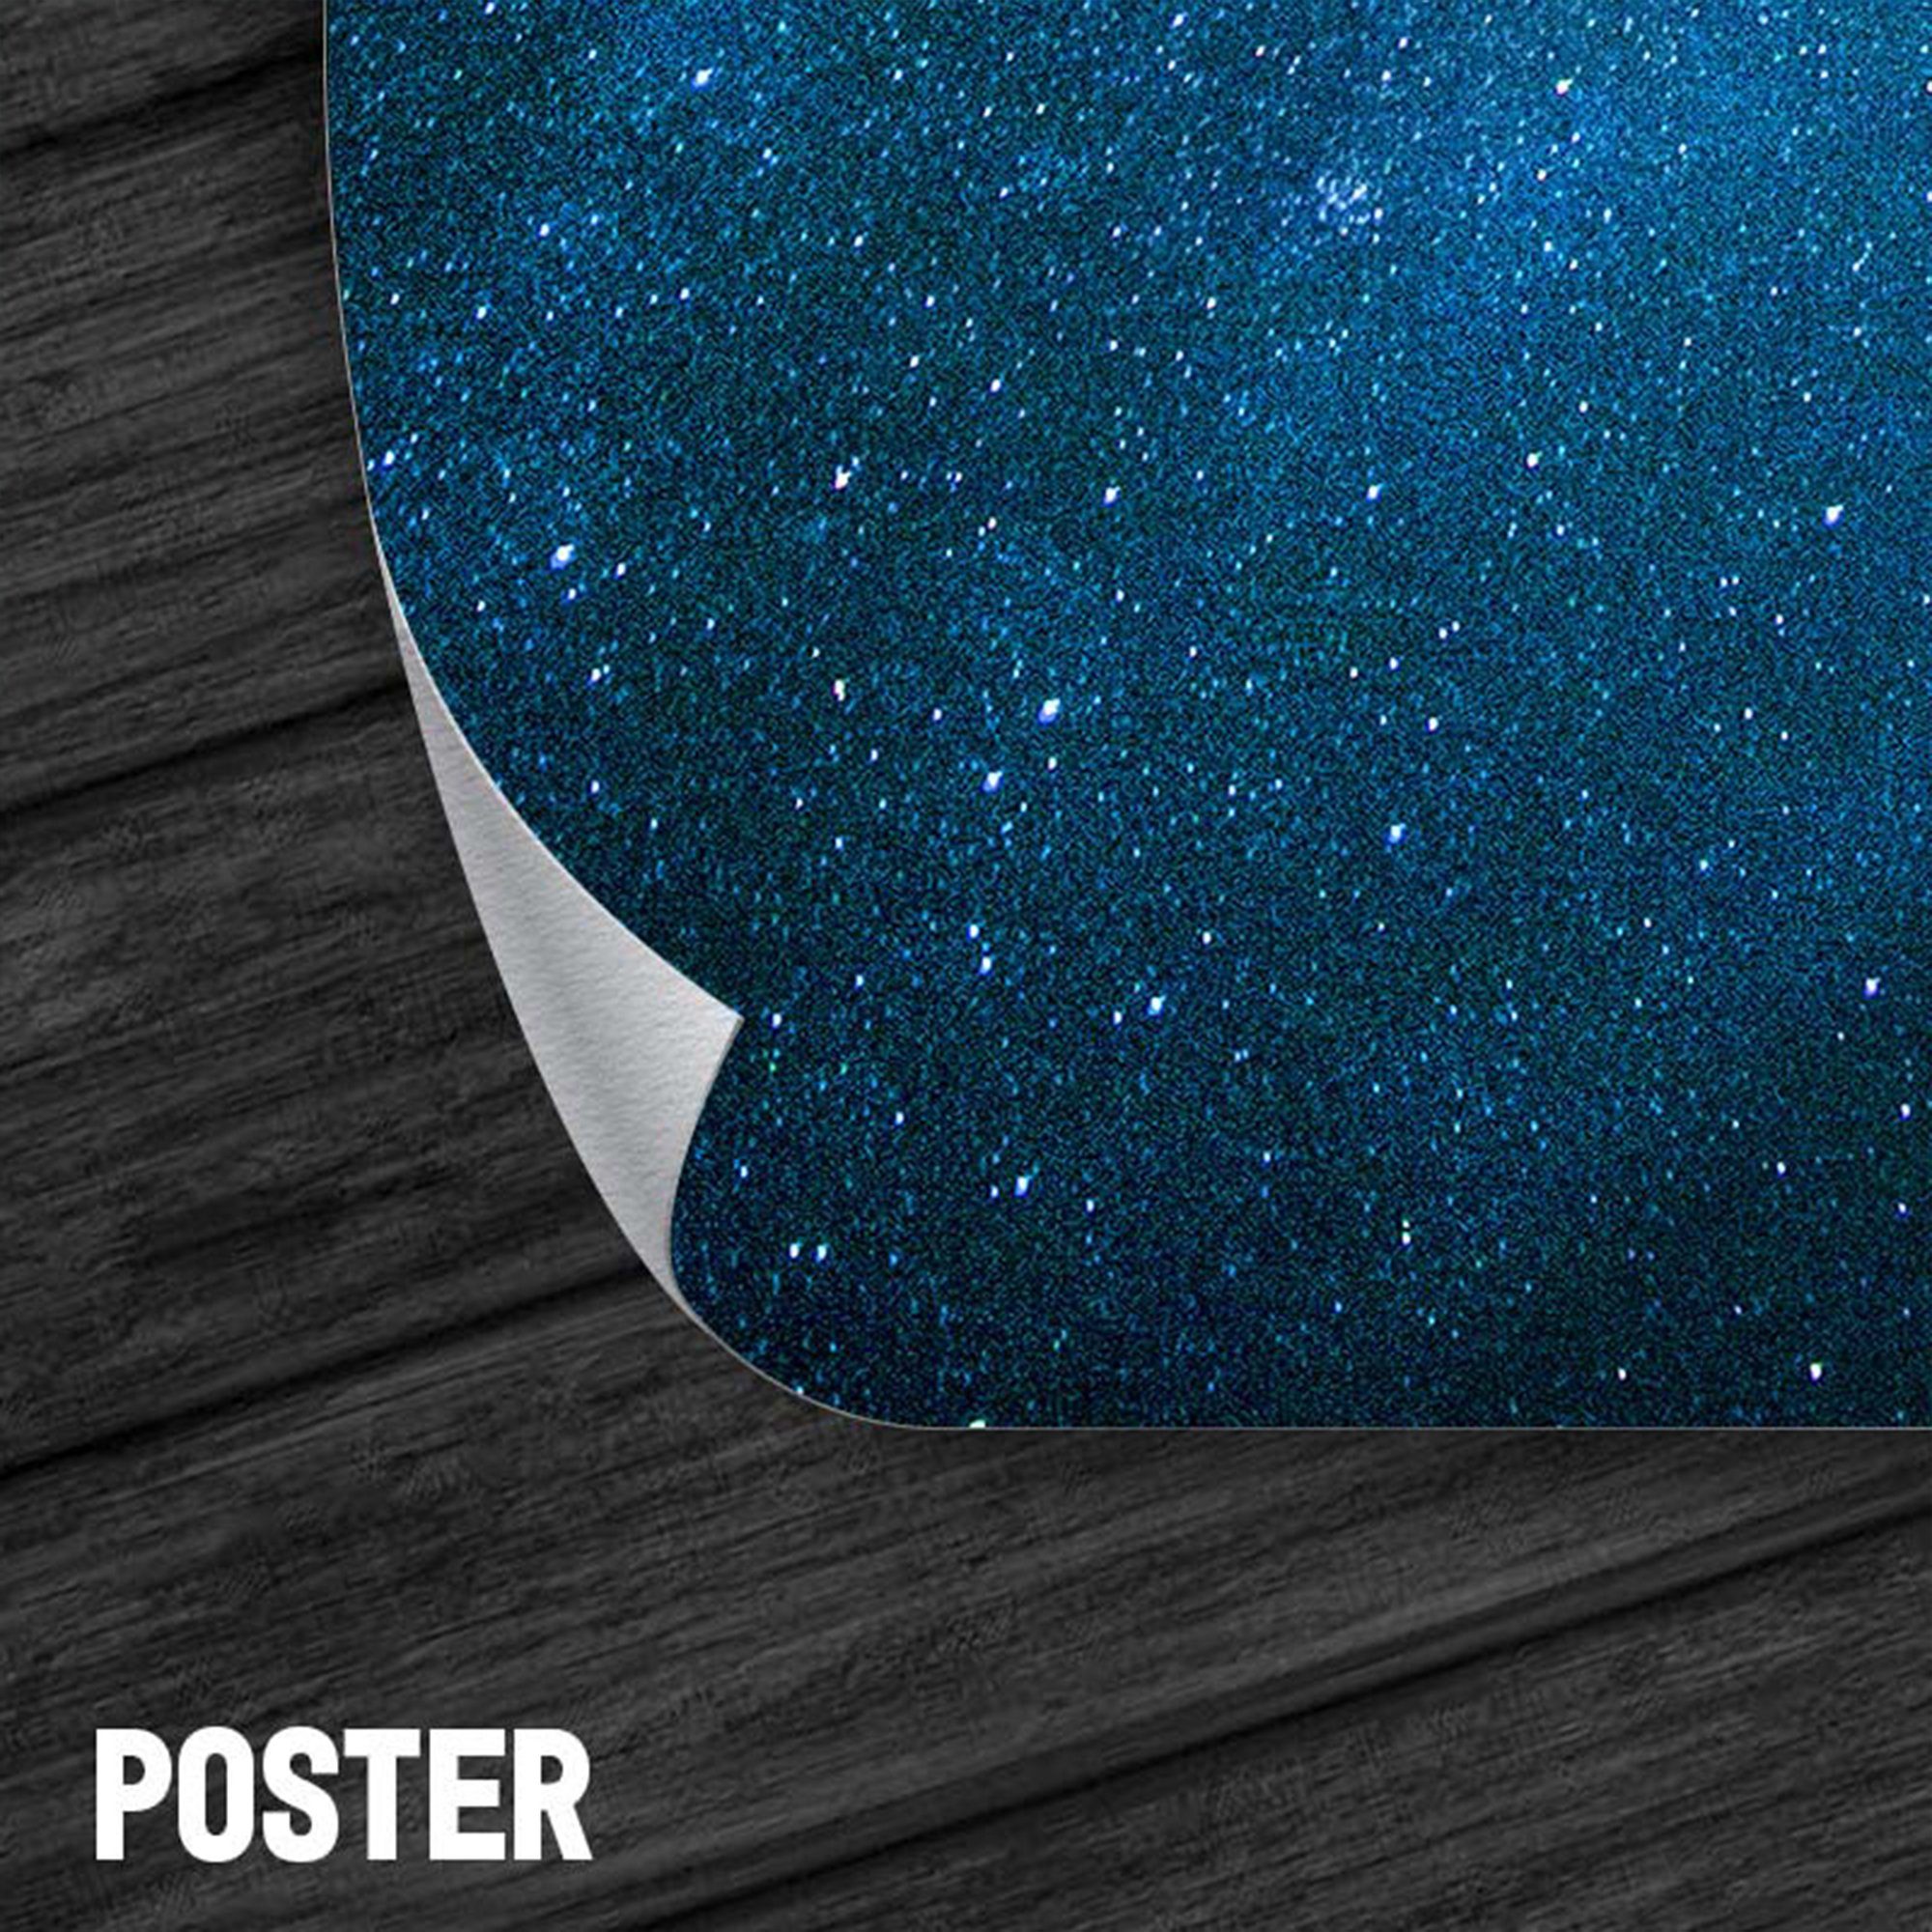 ArtMind XXL-Wandbild BATMAN - Canva Art, Leinwand ROLEX, als & gerahmte Wall Premium Bild, Größen, 3 in Wandbilder Poster